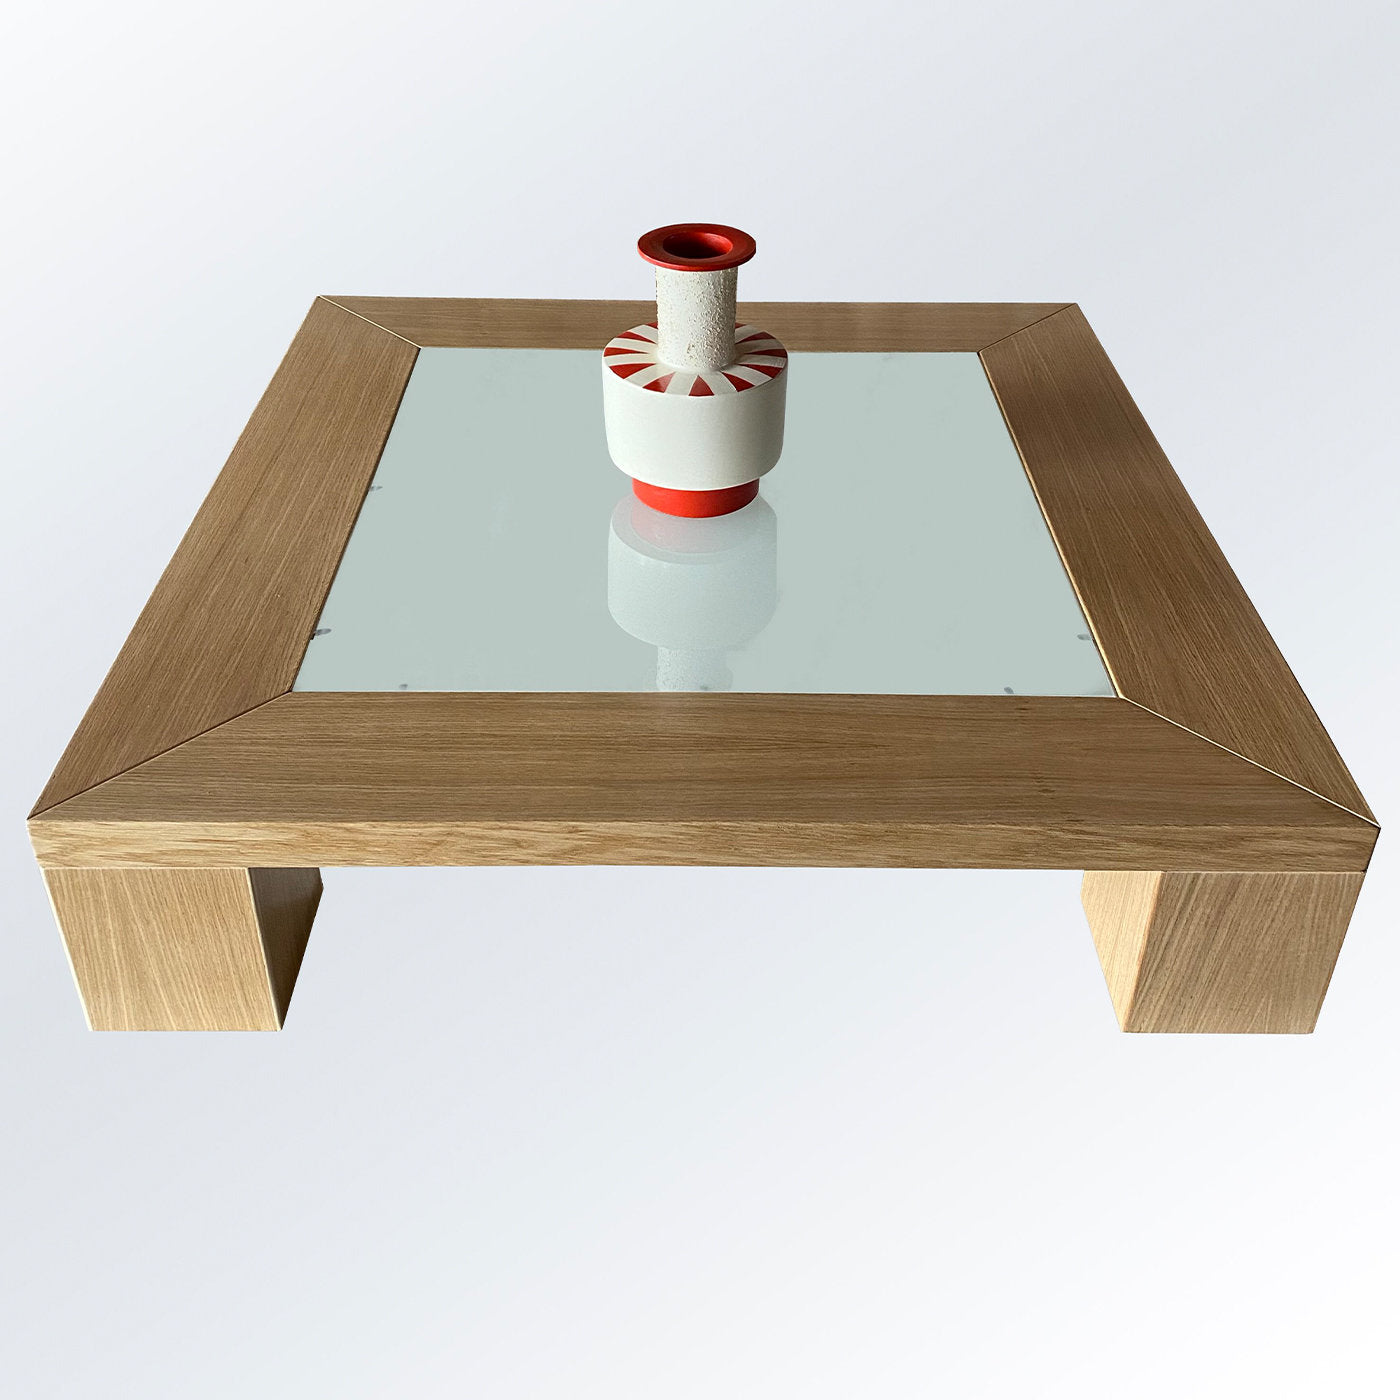 Quadro A Coffee Table by Ferdinando Meccani - Alternative view 2